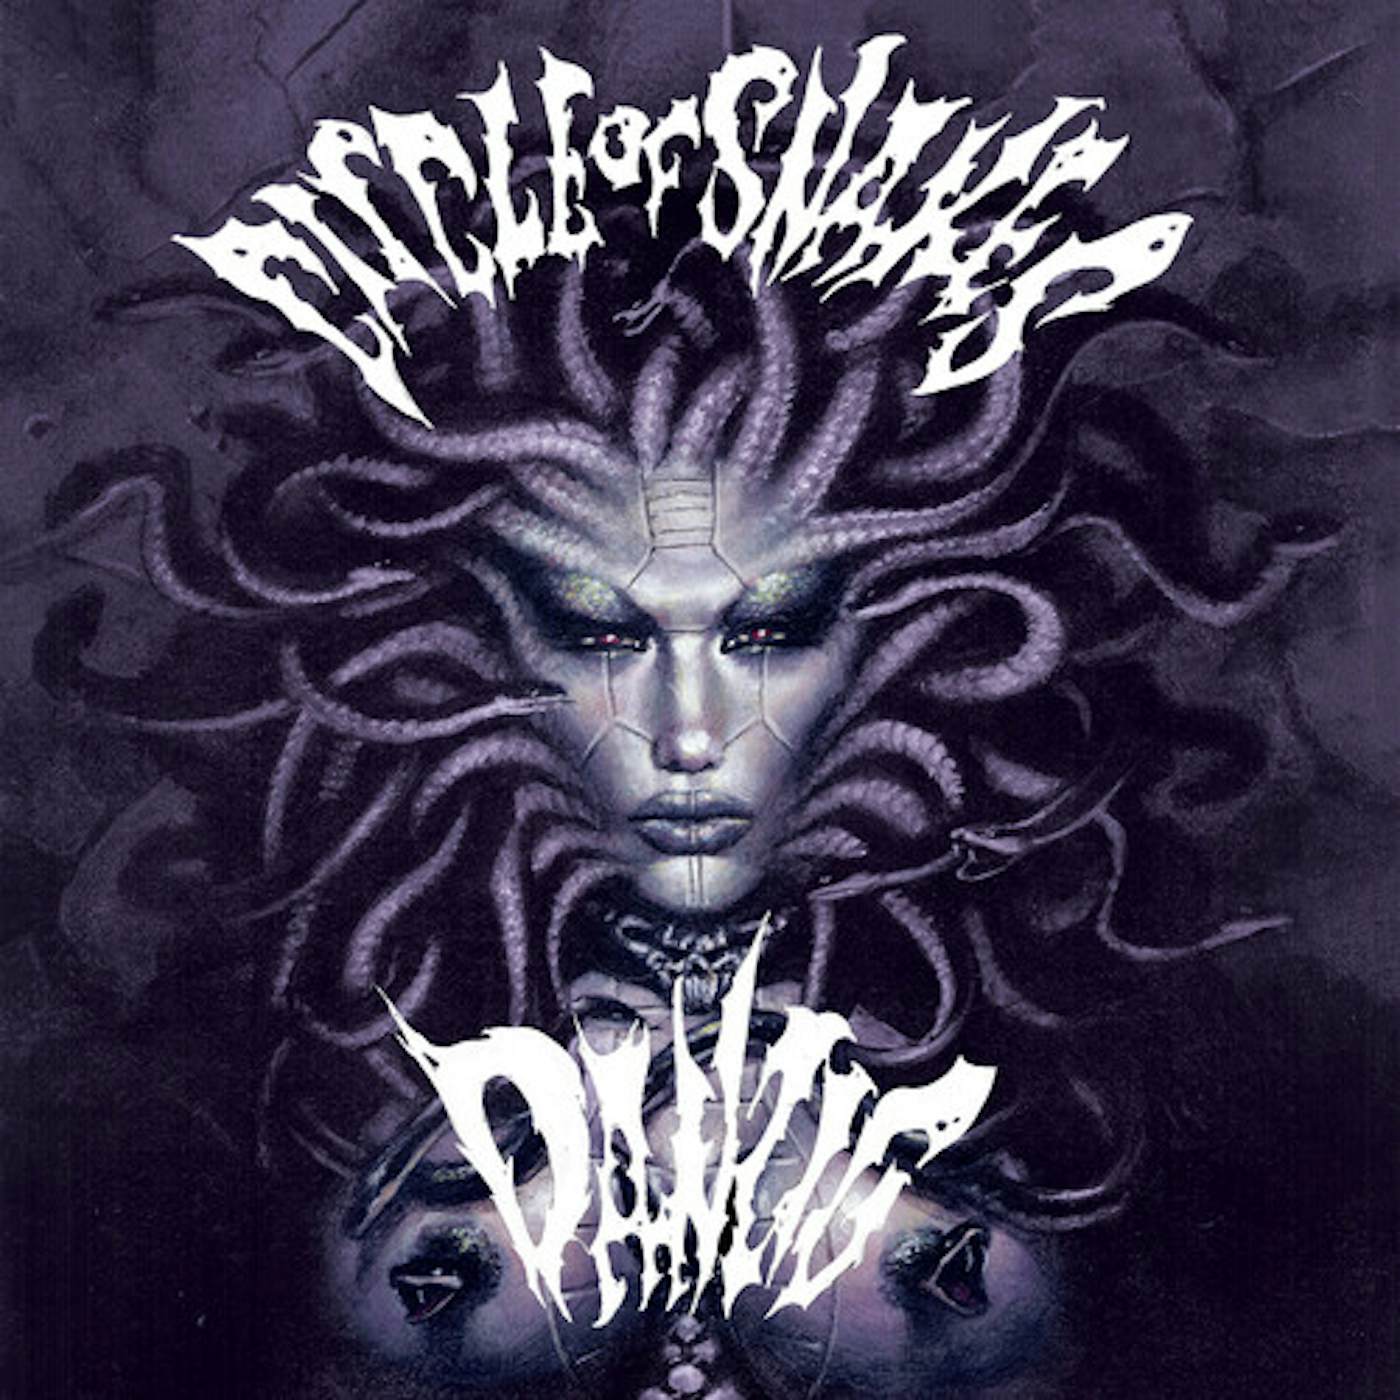 Danzig Circle Of Snakes - Black/White/Purple Splatter Vinyl Record